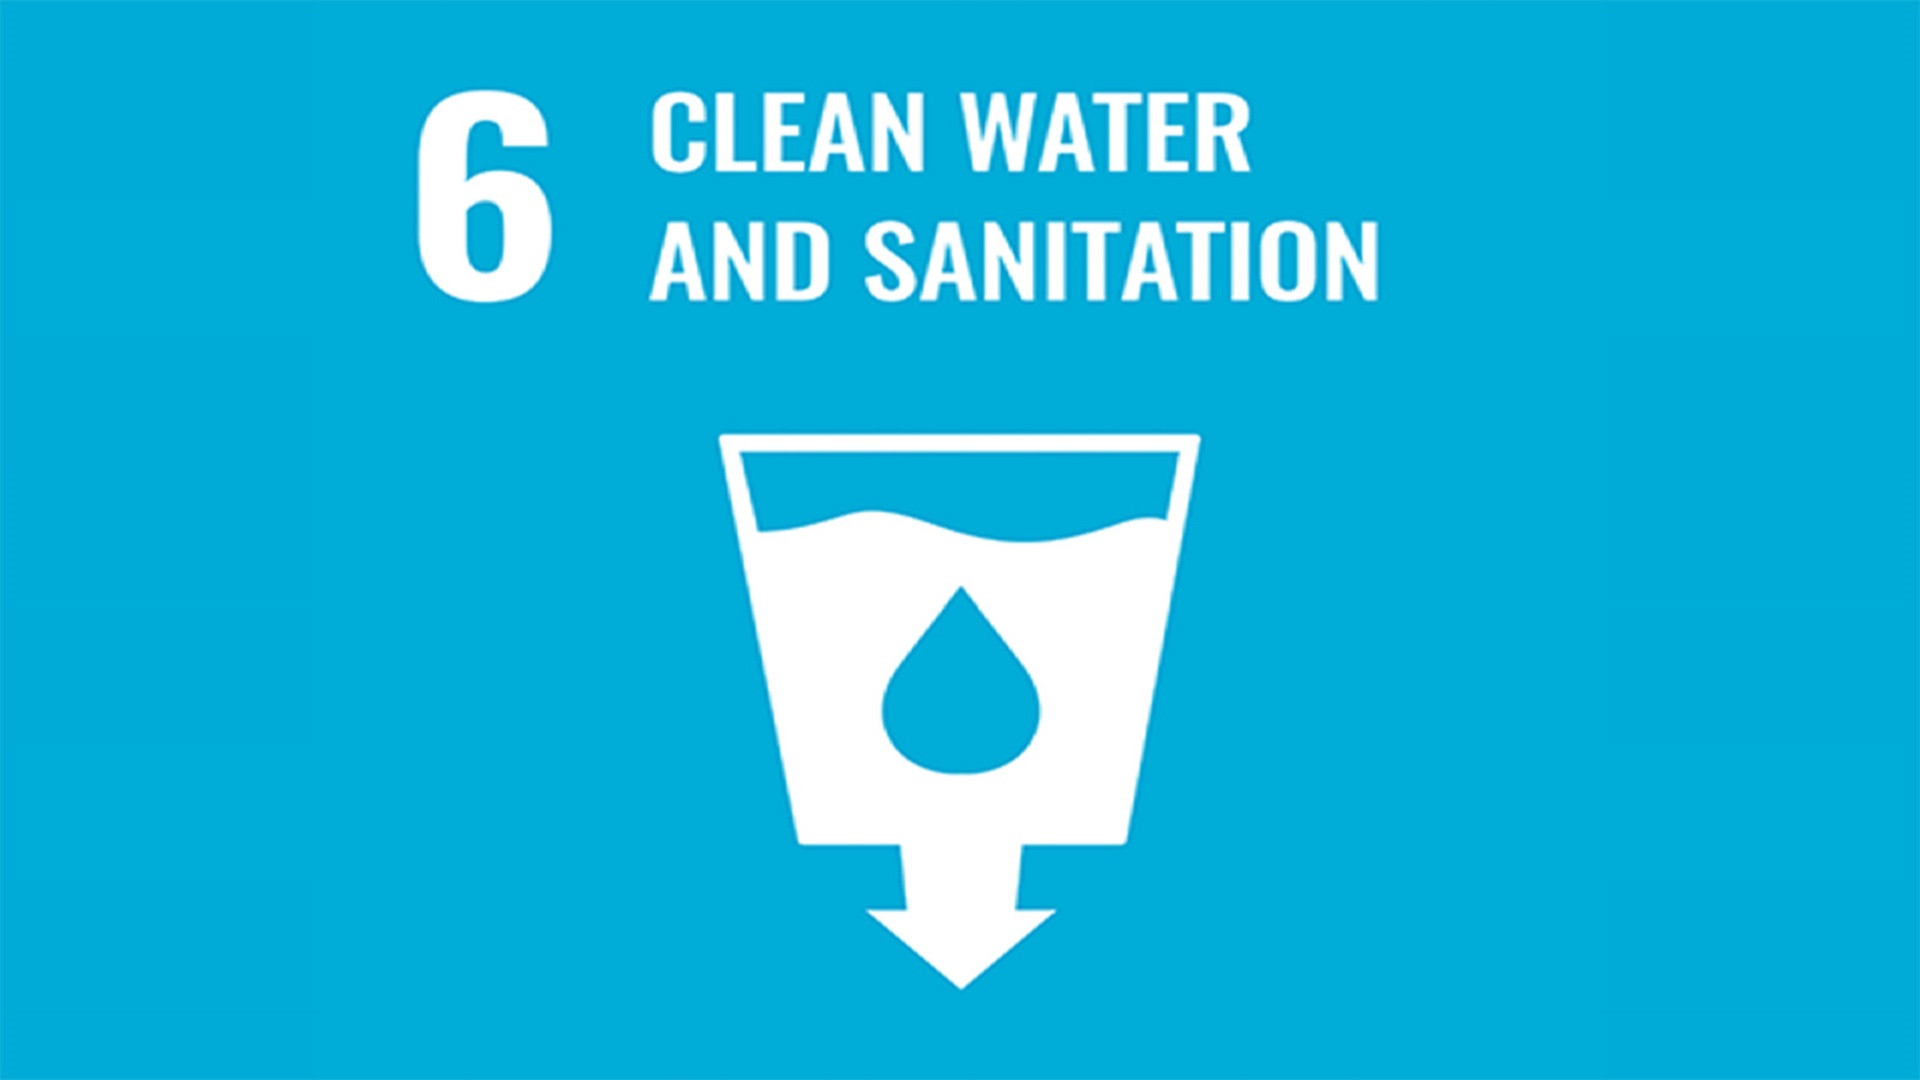 聯合國永續發展目標 6: 清潔水和衛生設施